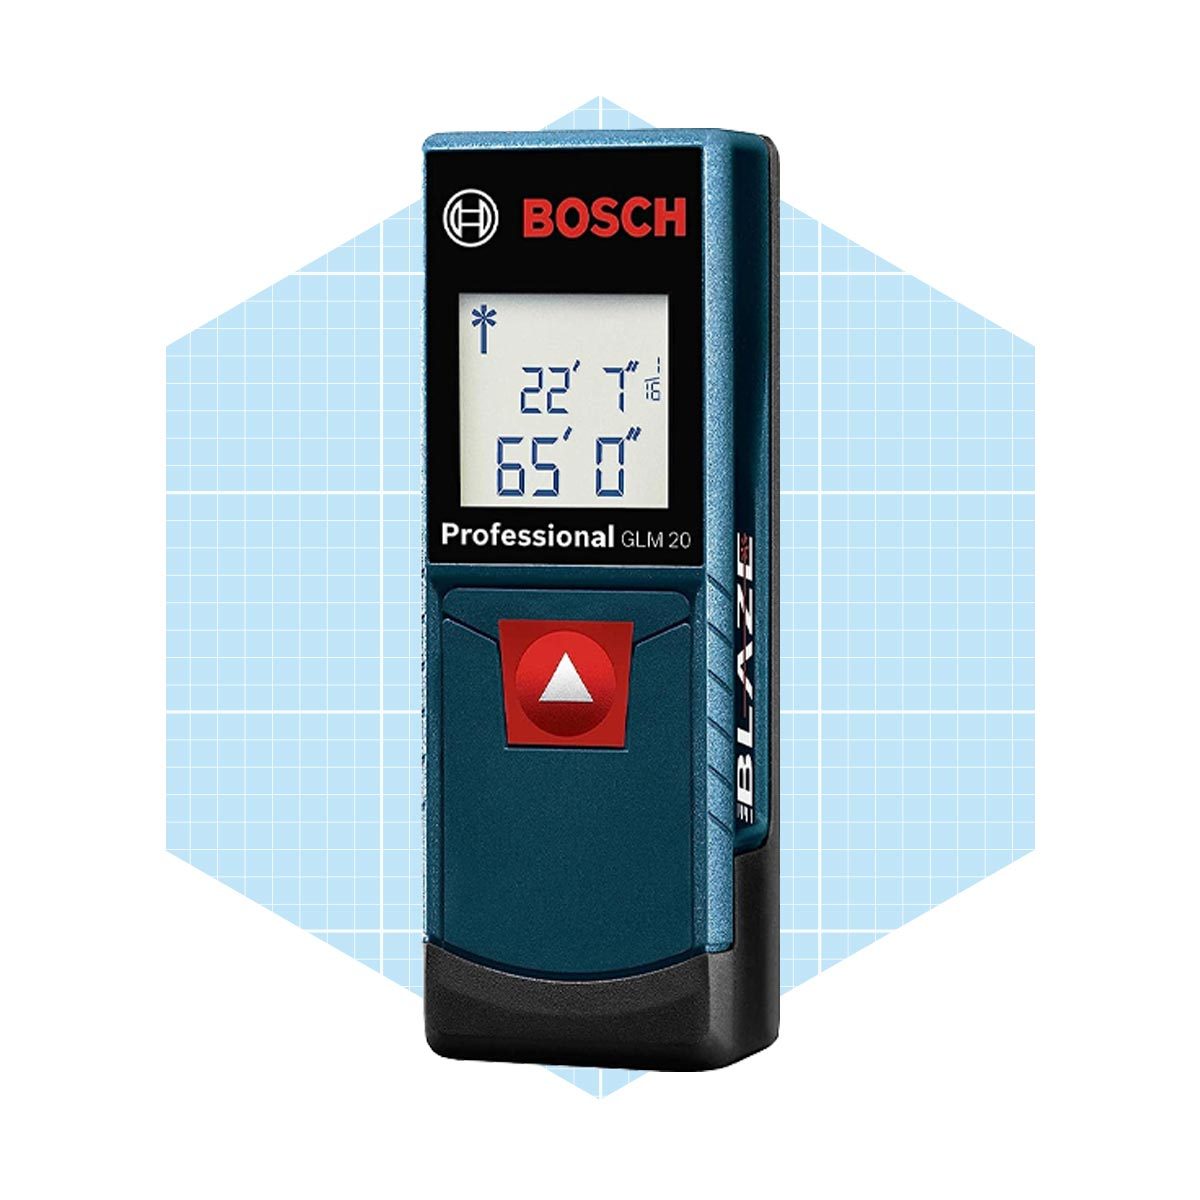 BOSCH DIY, Digital Laser Measuring Tool